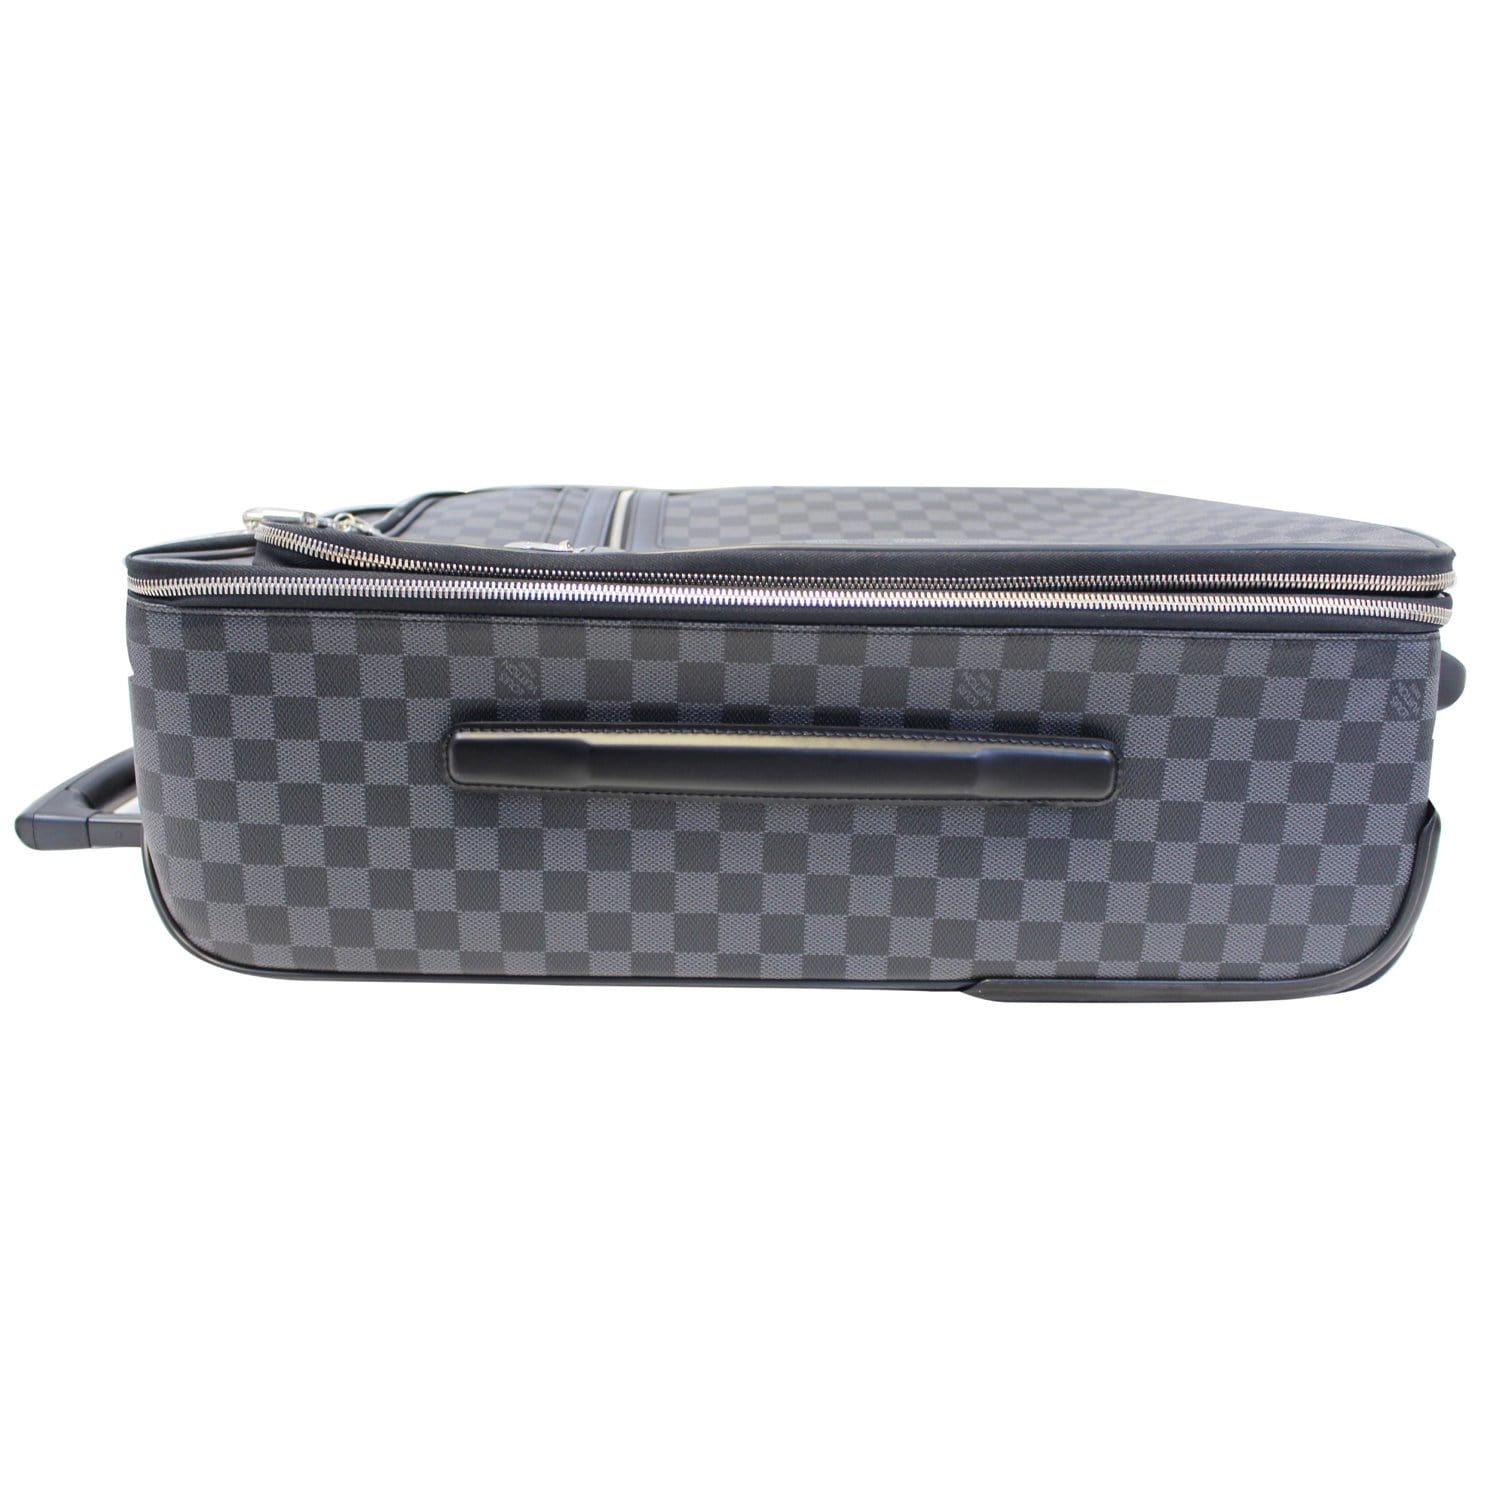 Louis Vuitton Pegase Legere Business 55 N21225 Damier Graphite Suitcase